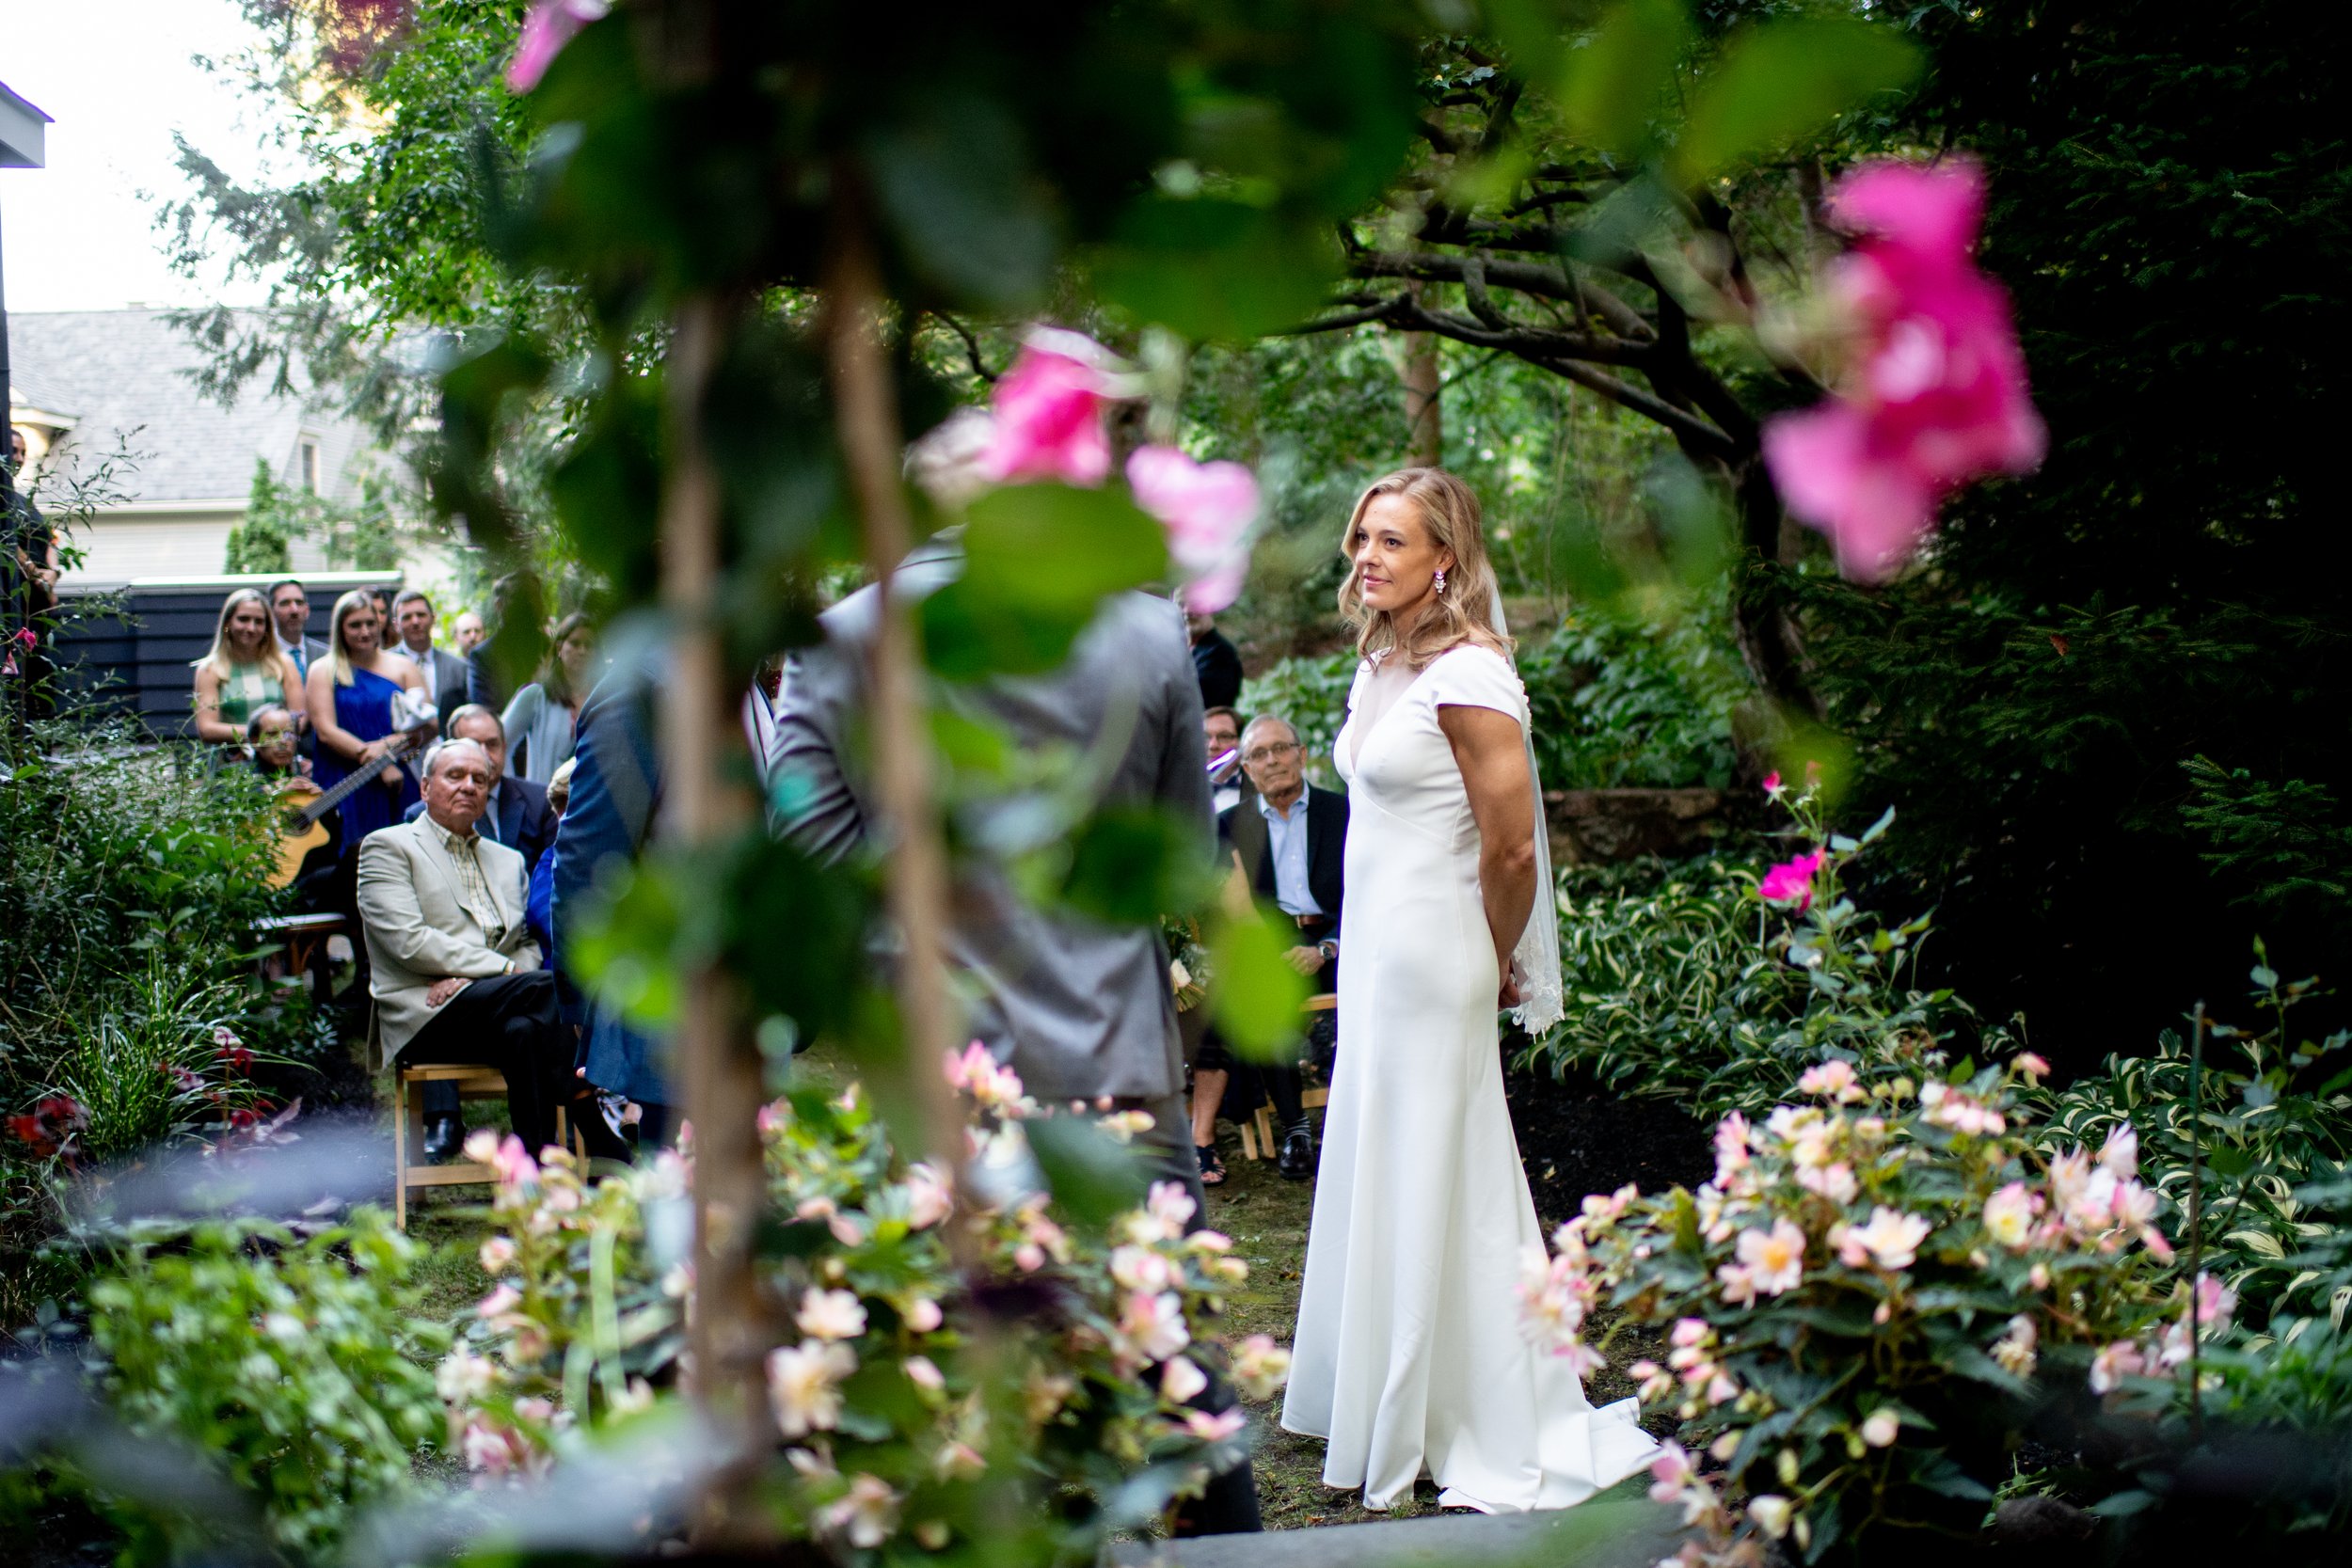  Backyard Wedding, Intimate Wedding, Backyard Wedding Ceremony 